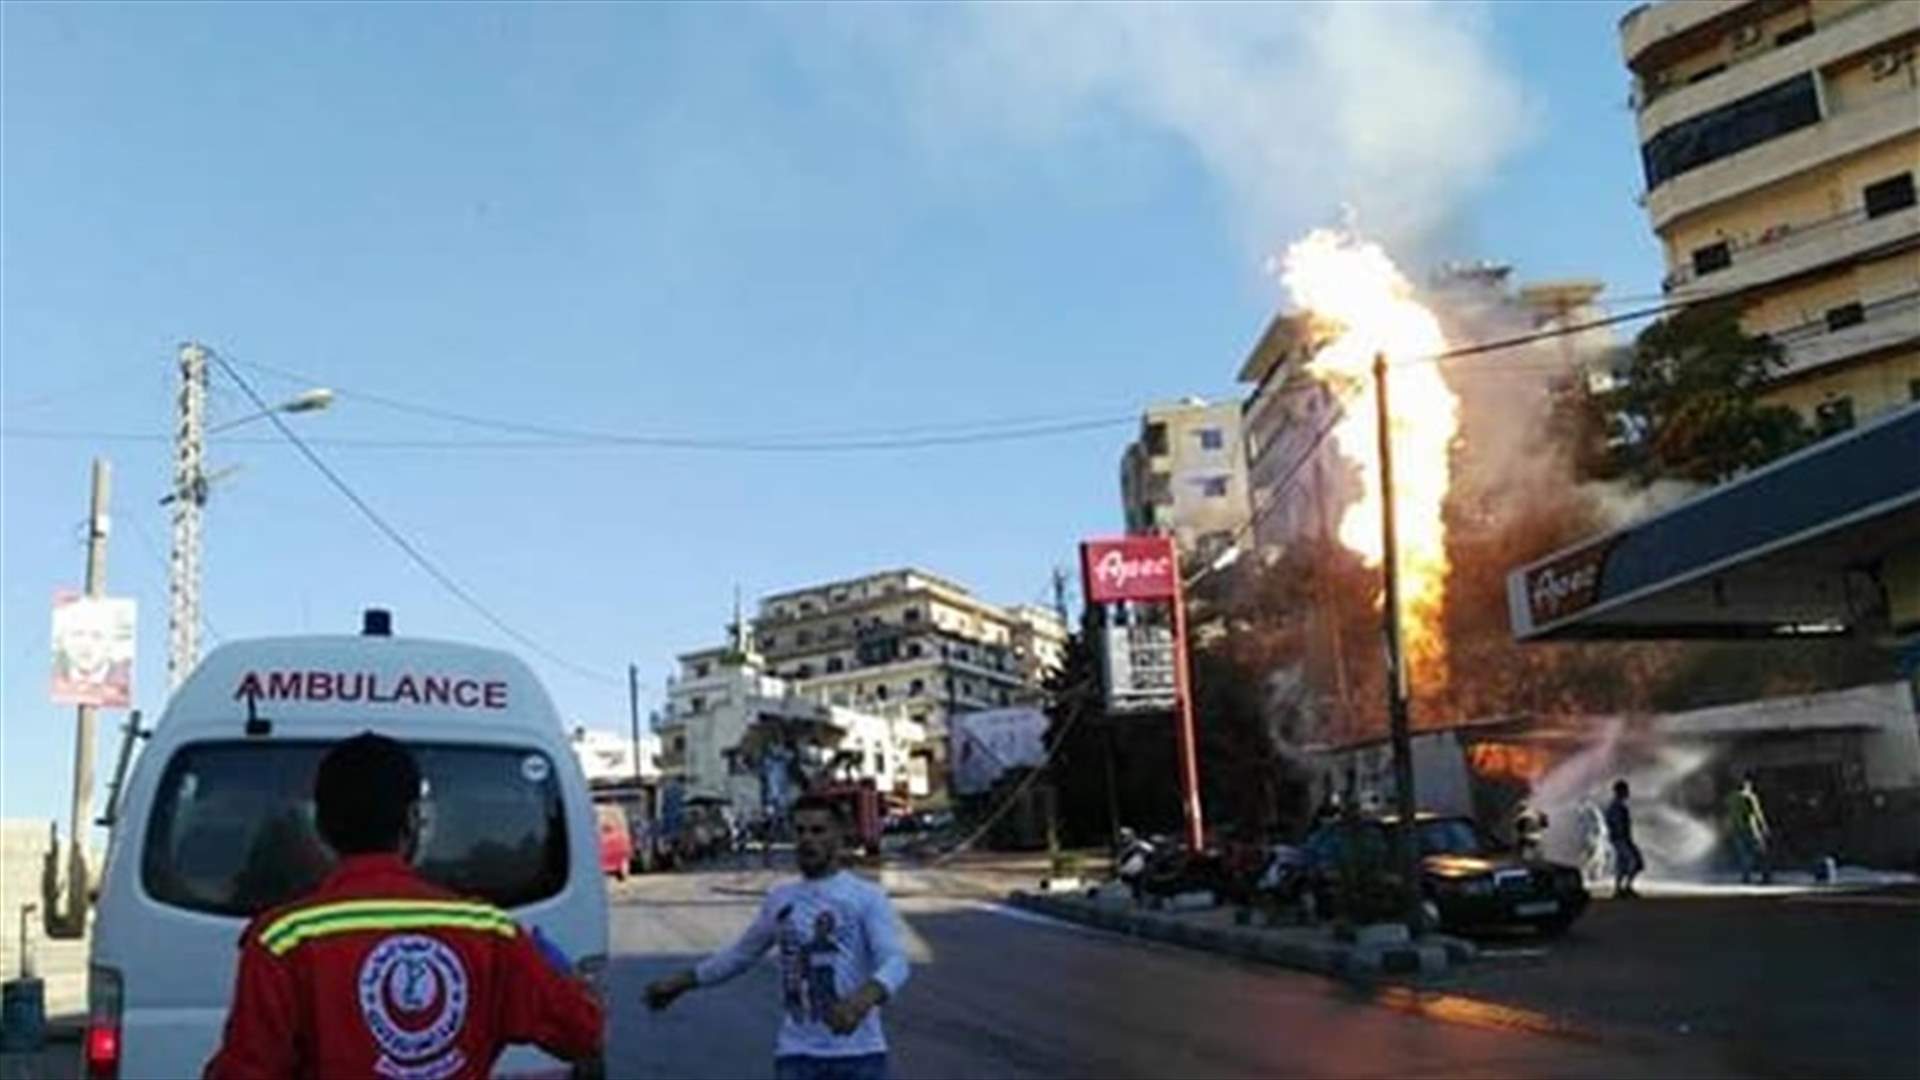 [PHOTOS] Huge fire breaks out in Tripoli